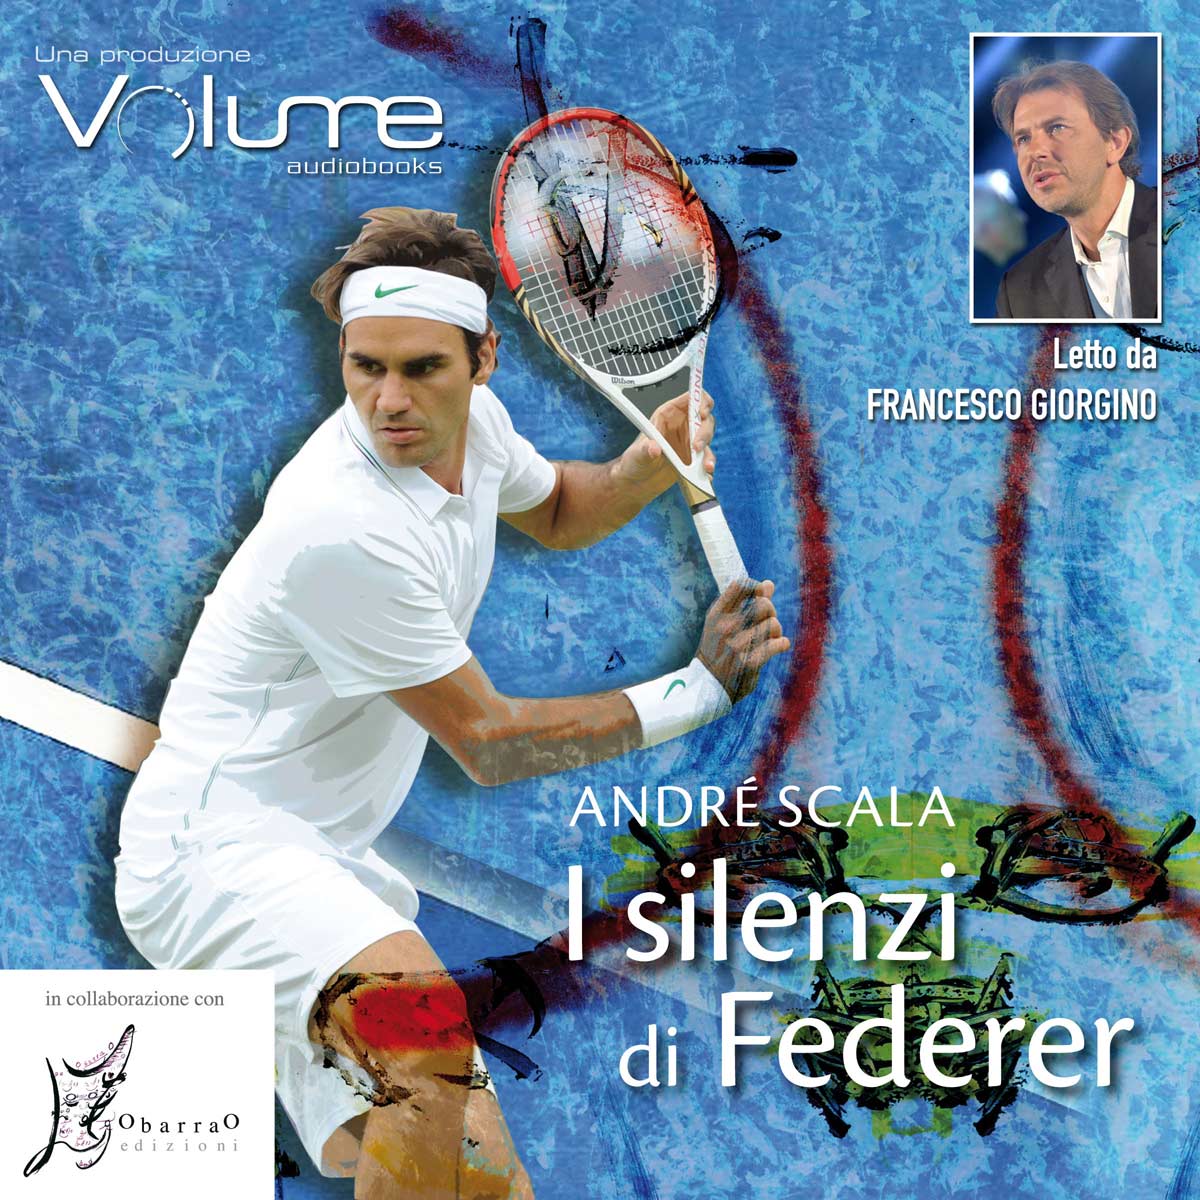 “I silenzi di Federer”, un audiolibro letto da Francesco Giorgino